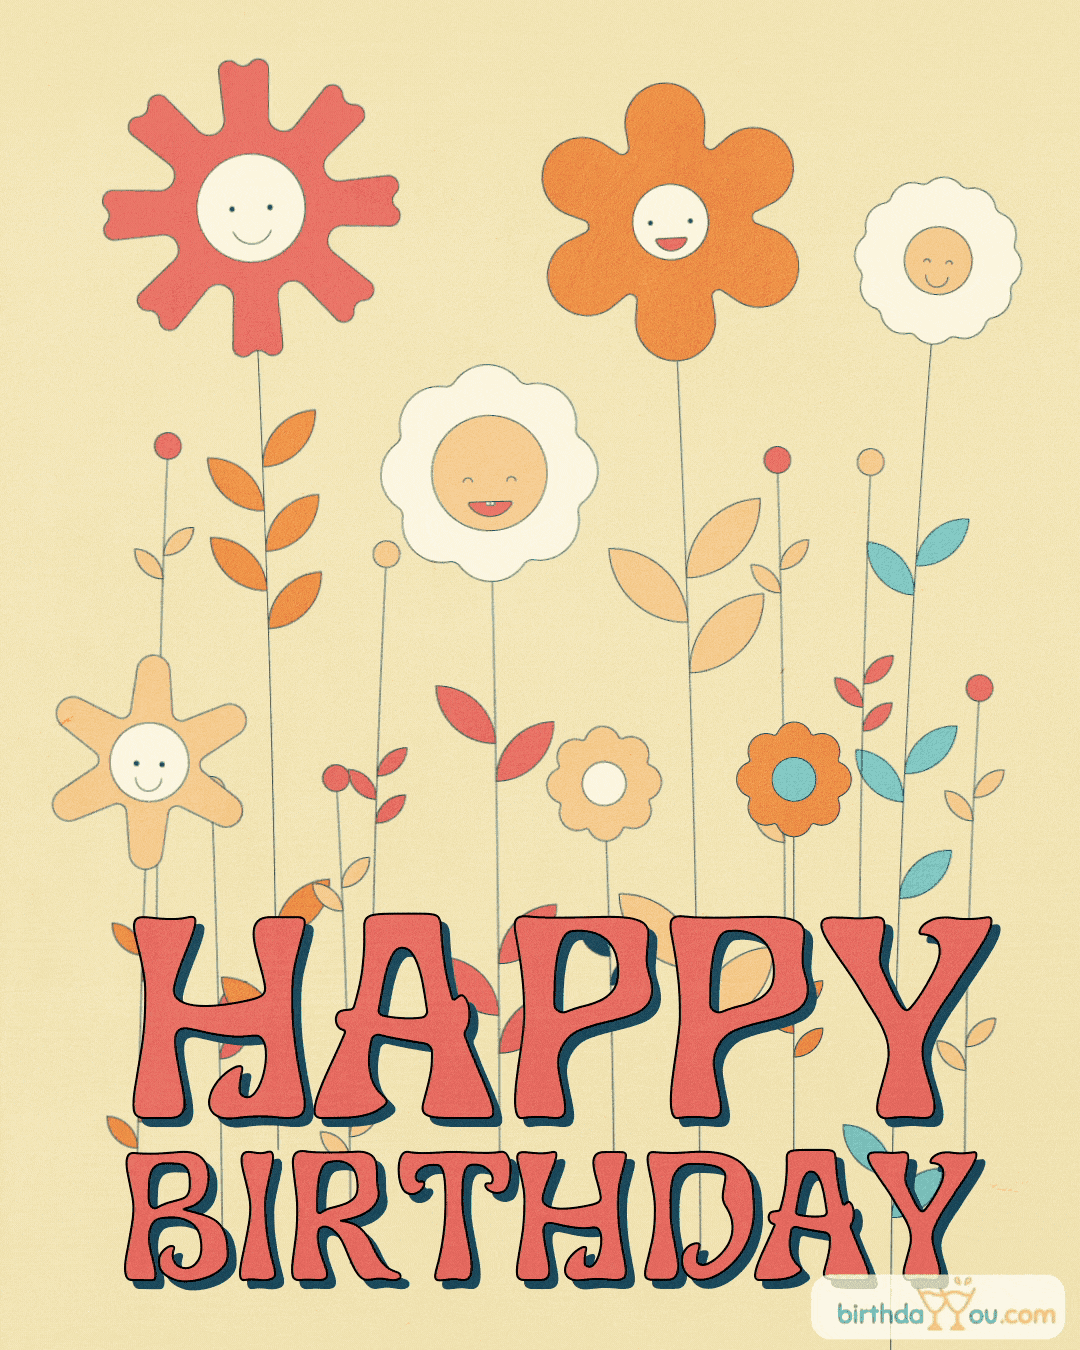 happy birthday animated flowers